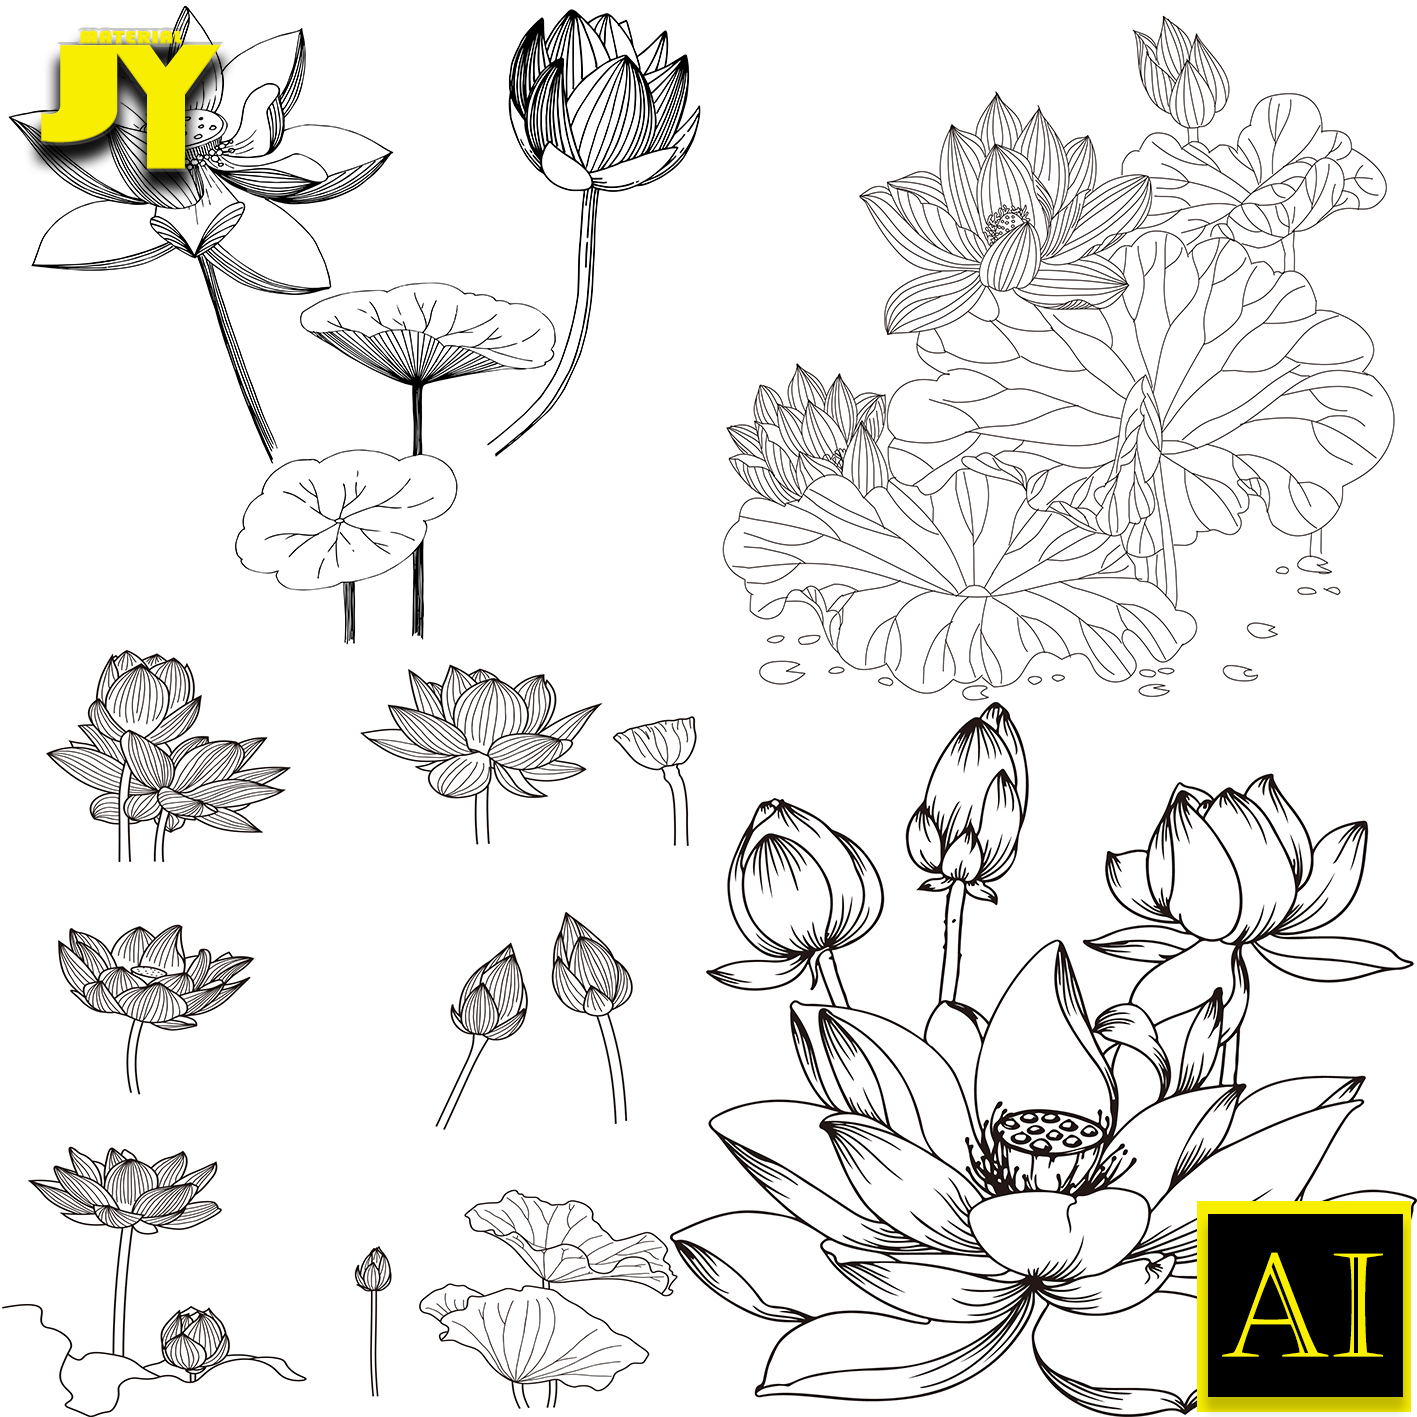 手绘线描素描白描金色线条荷花莲花荷叶印花图案植物花卉矢量素材